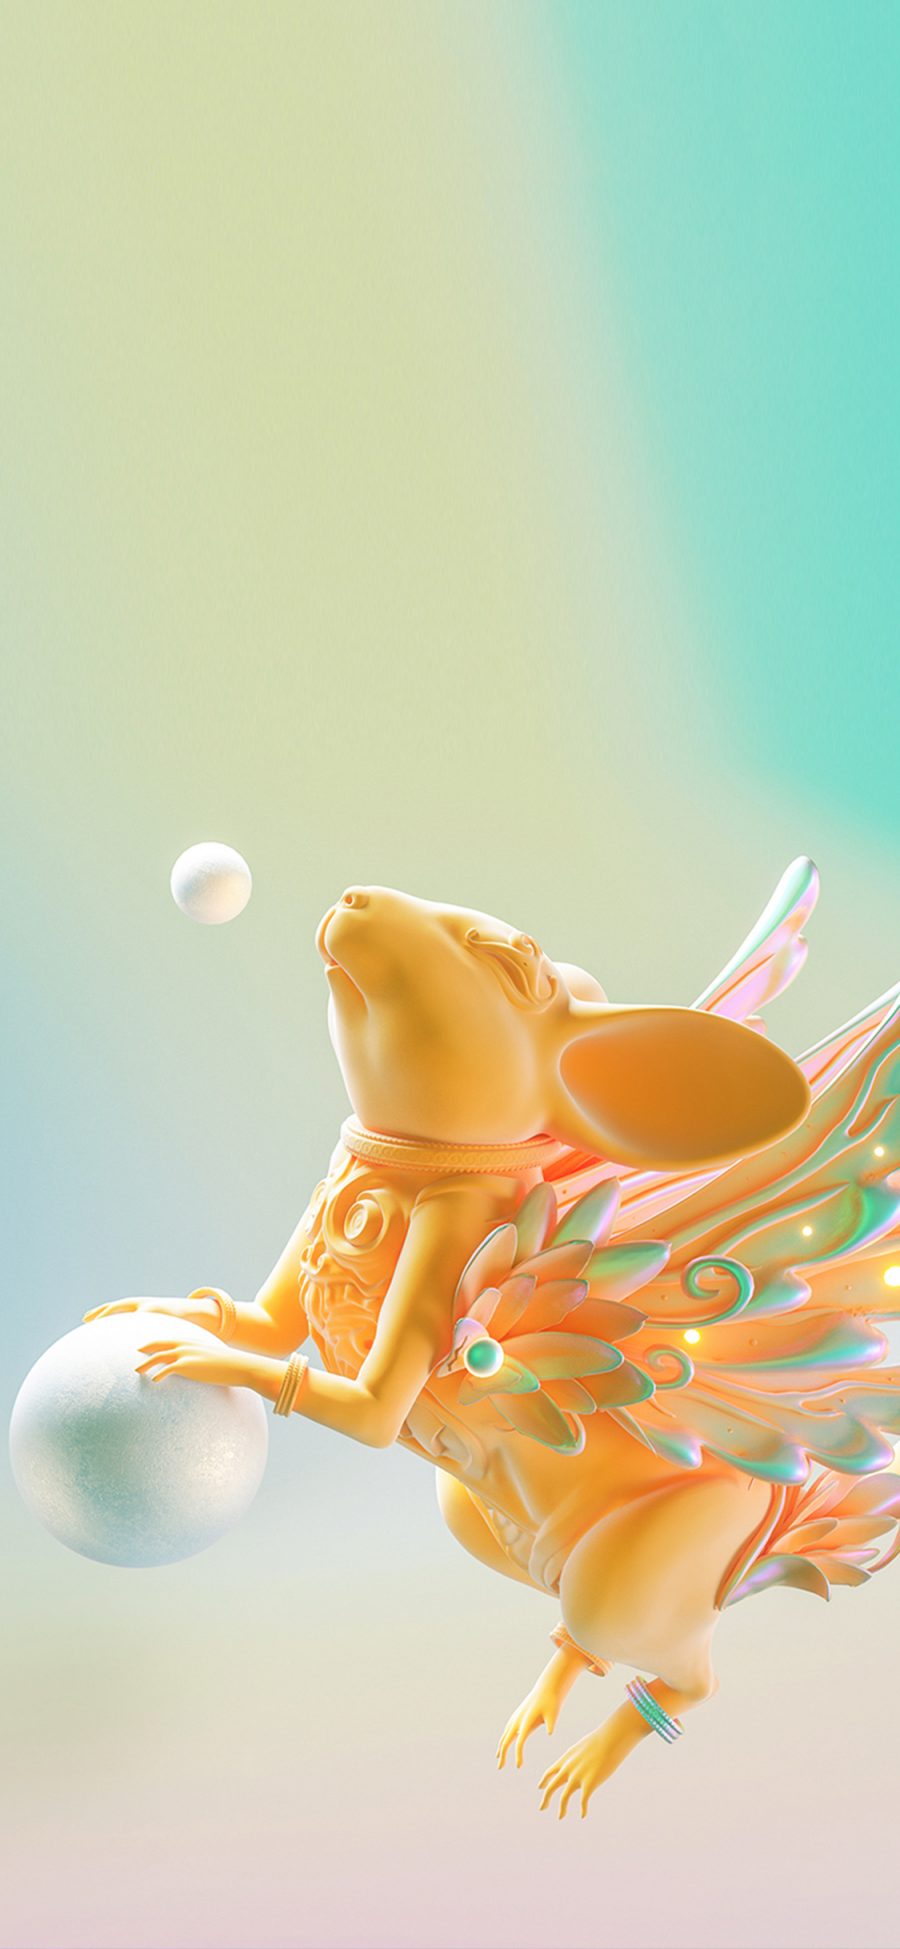 [2436×1125]3D 合成 老鼠 金色 翅膀 苹果手机动漫壁纸图片